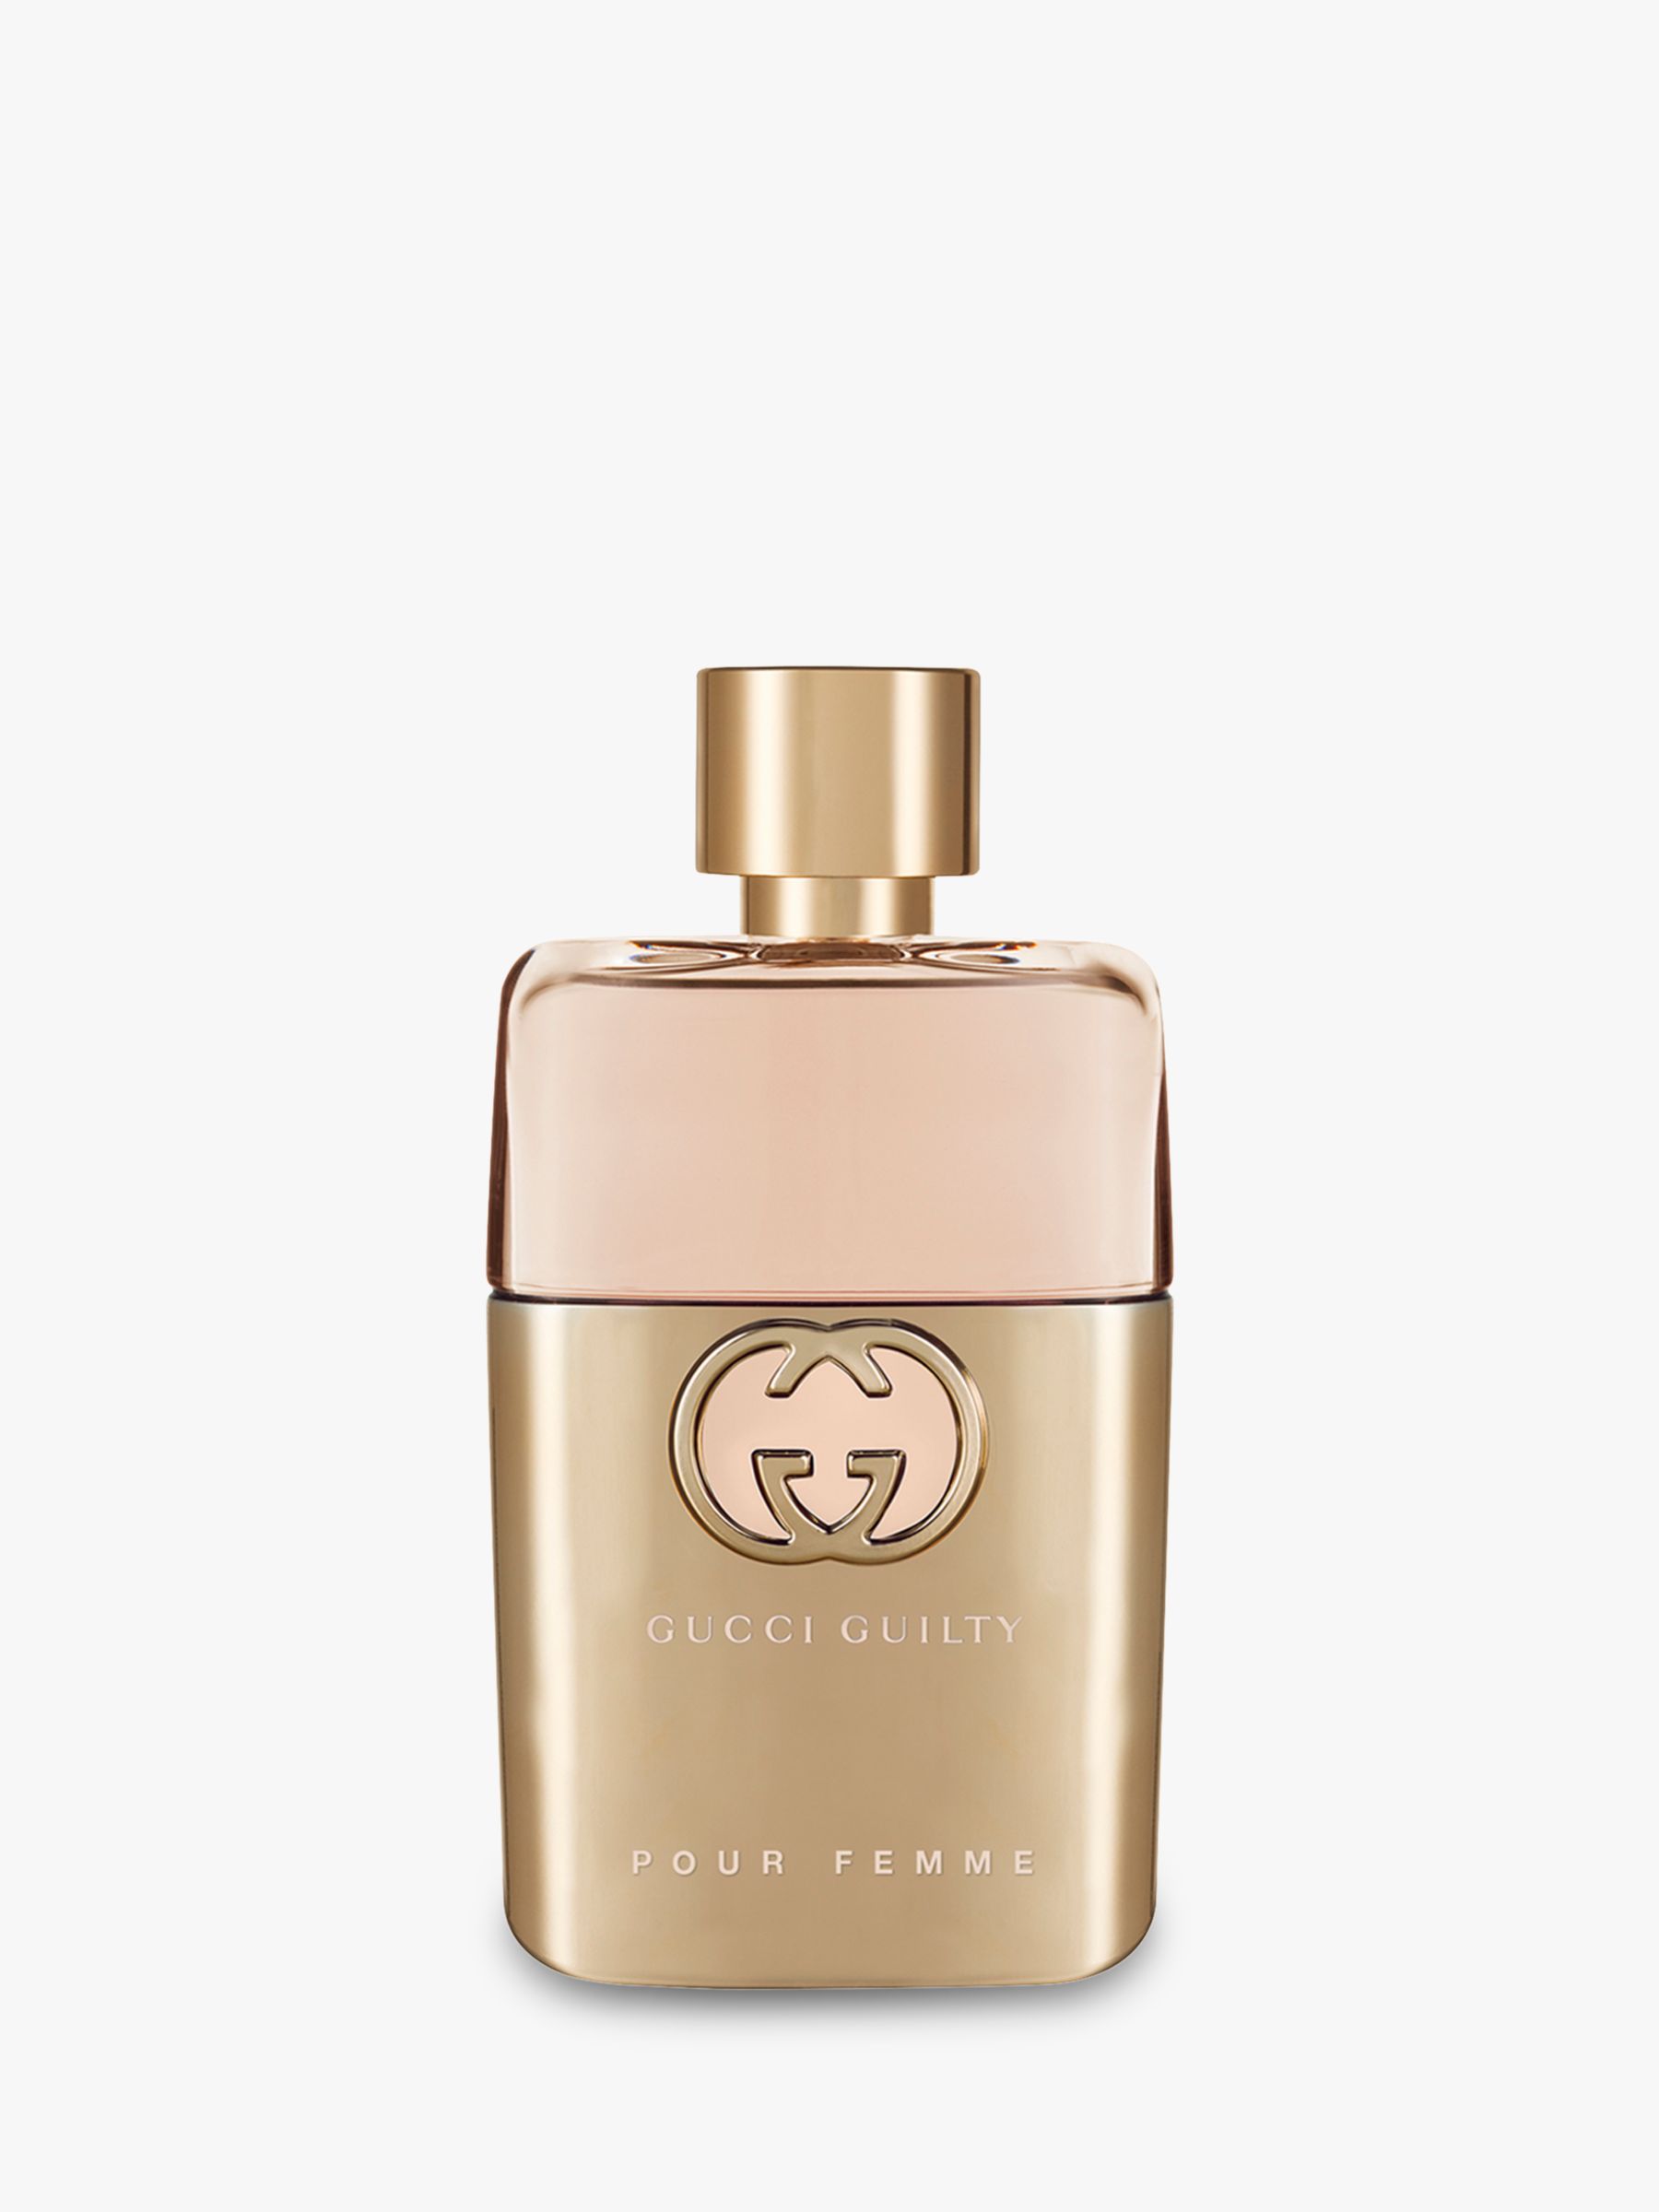 Guilty Eau de Parfum For Her, 50ml at Lewis & Partners